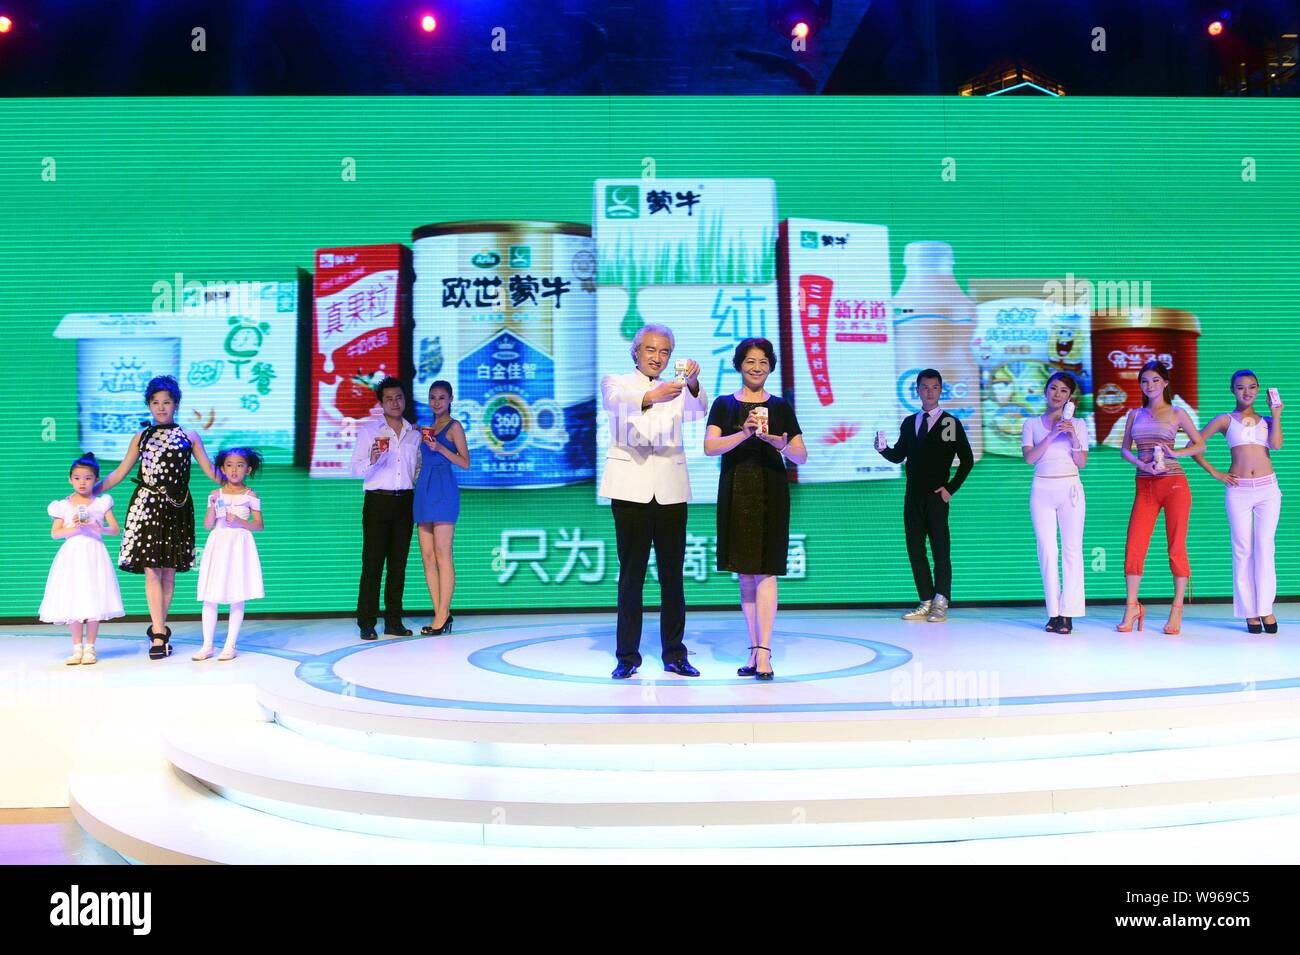 Akteure, Mengniu Milk, die neue Verpackung abgebildet, wie sie eine Pressekonferenz, der den Gruppen neue Milch Verpackung Bild, br zu starten teilnehmen Stockfoto